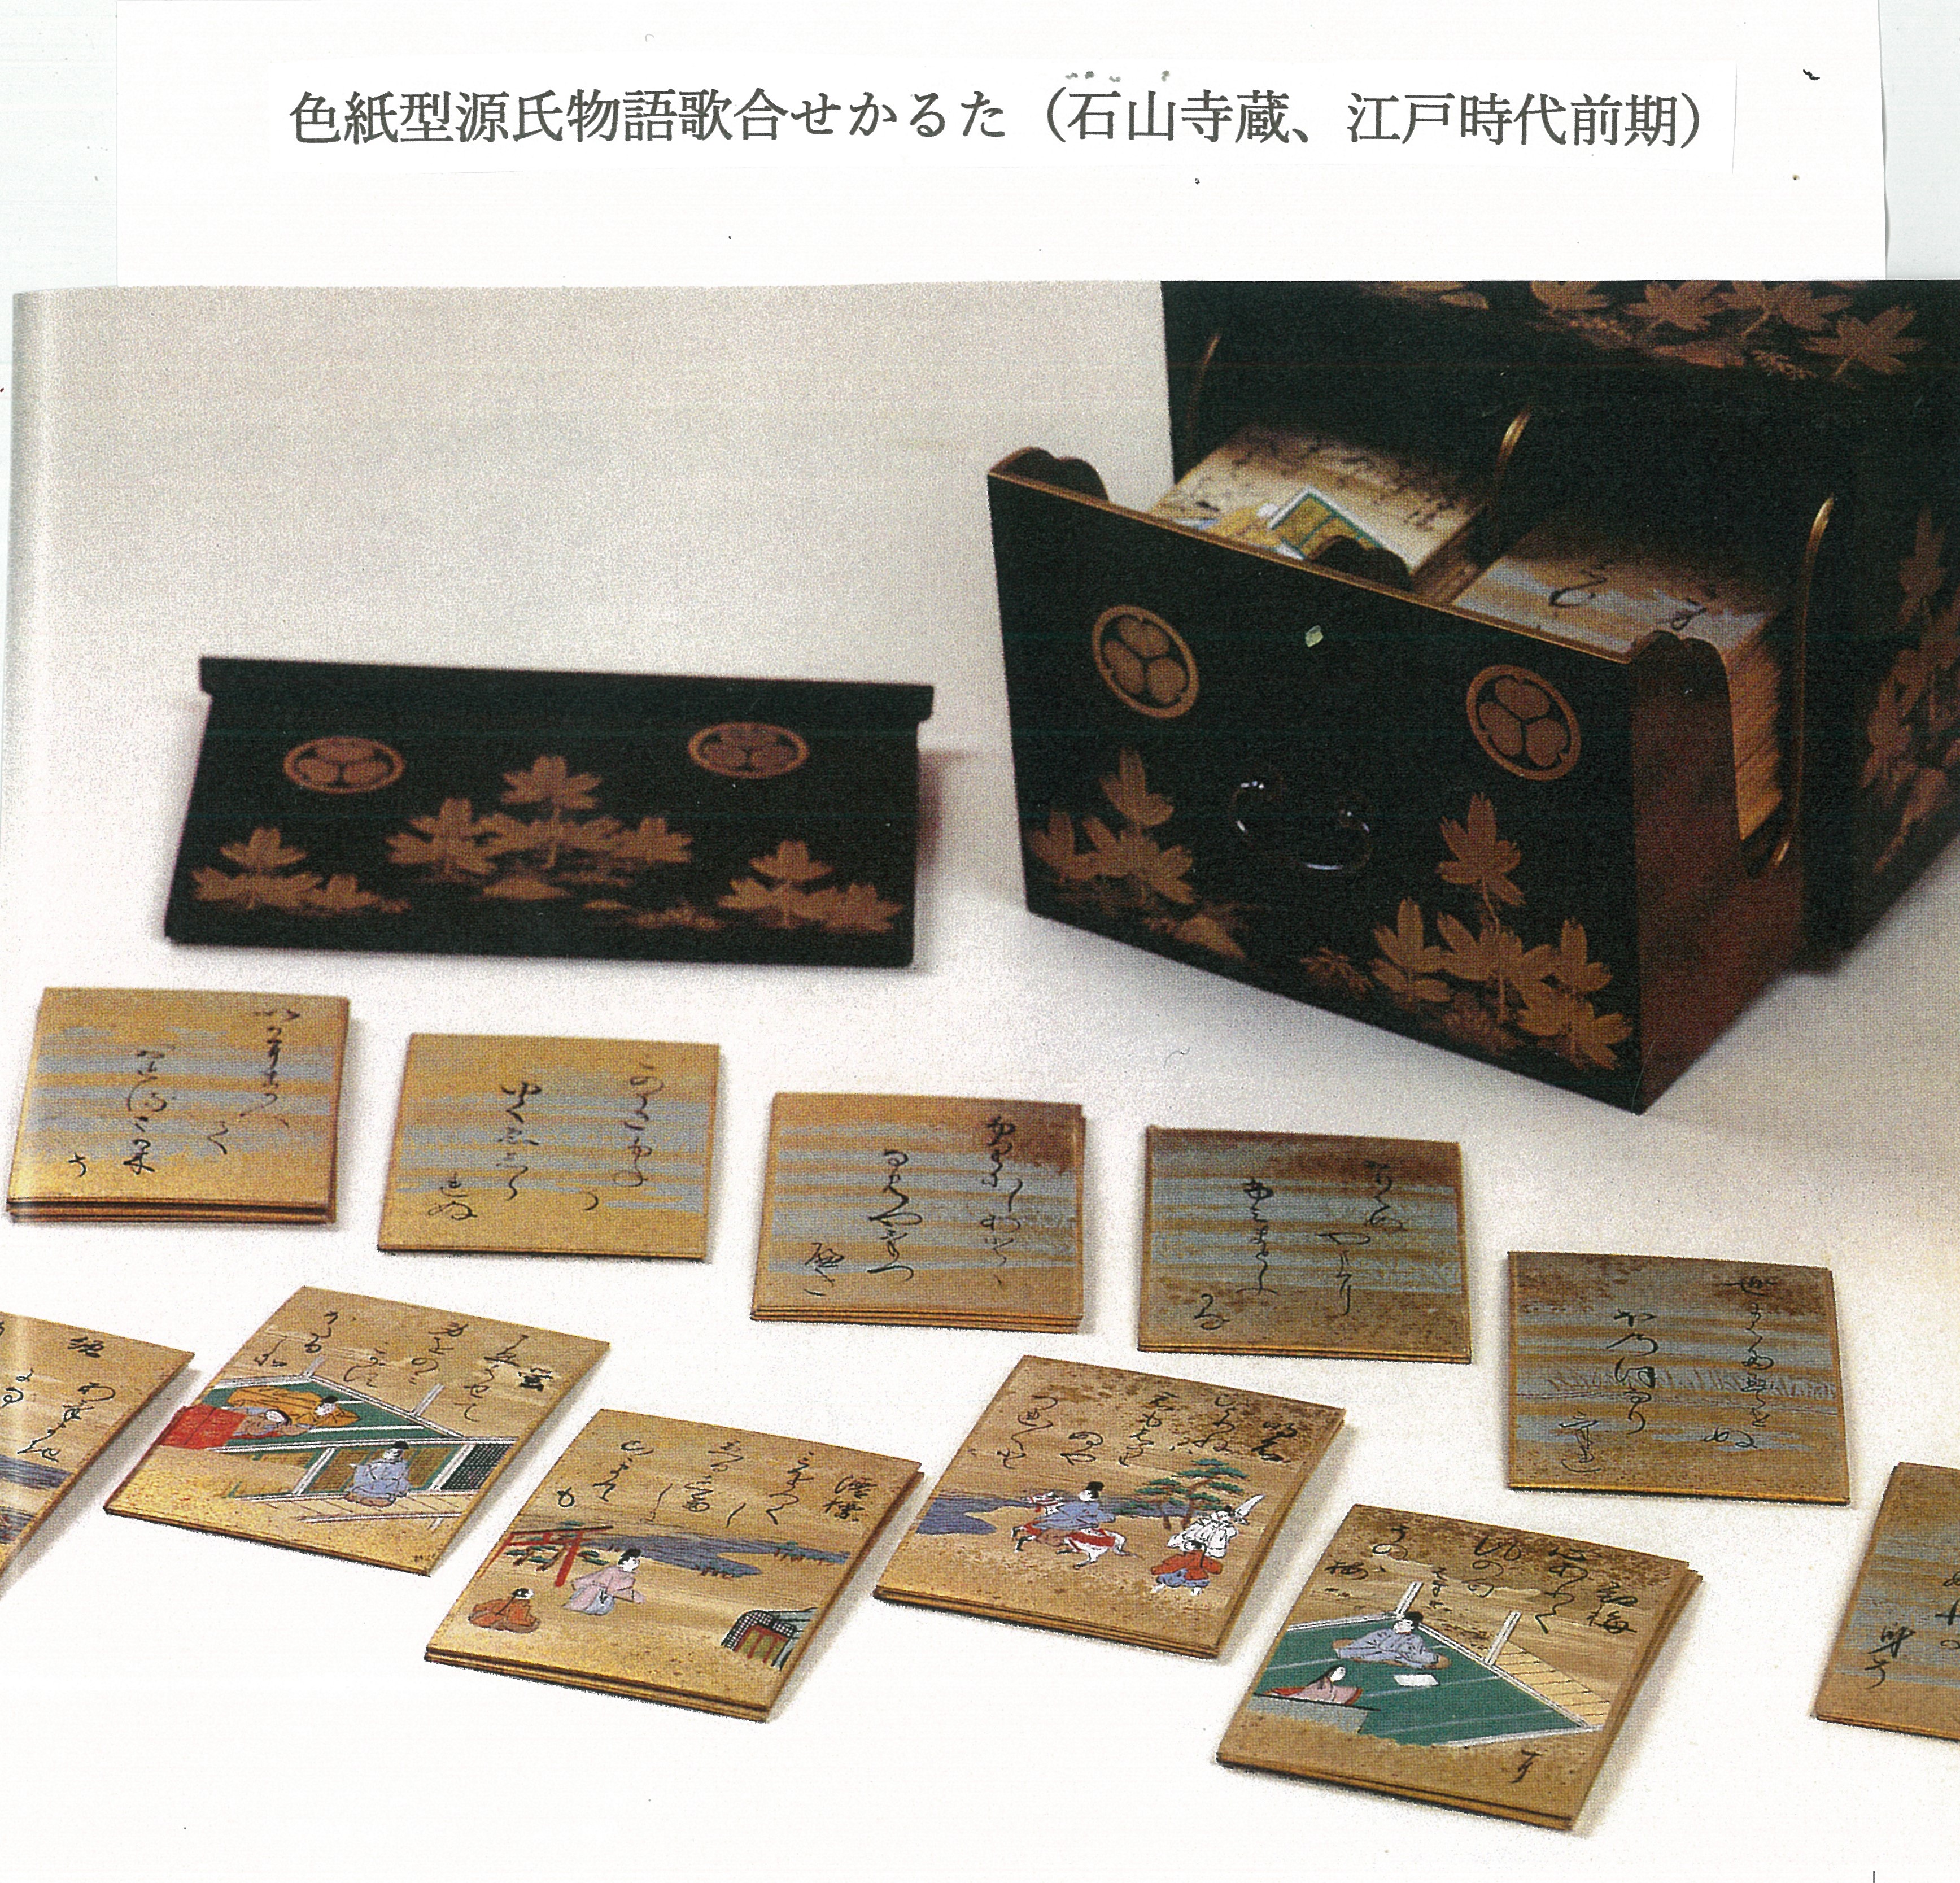 三 初期「歌合せかるた」は小型色紙 - 日本かるた文化館